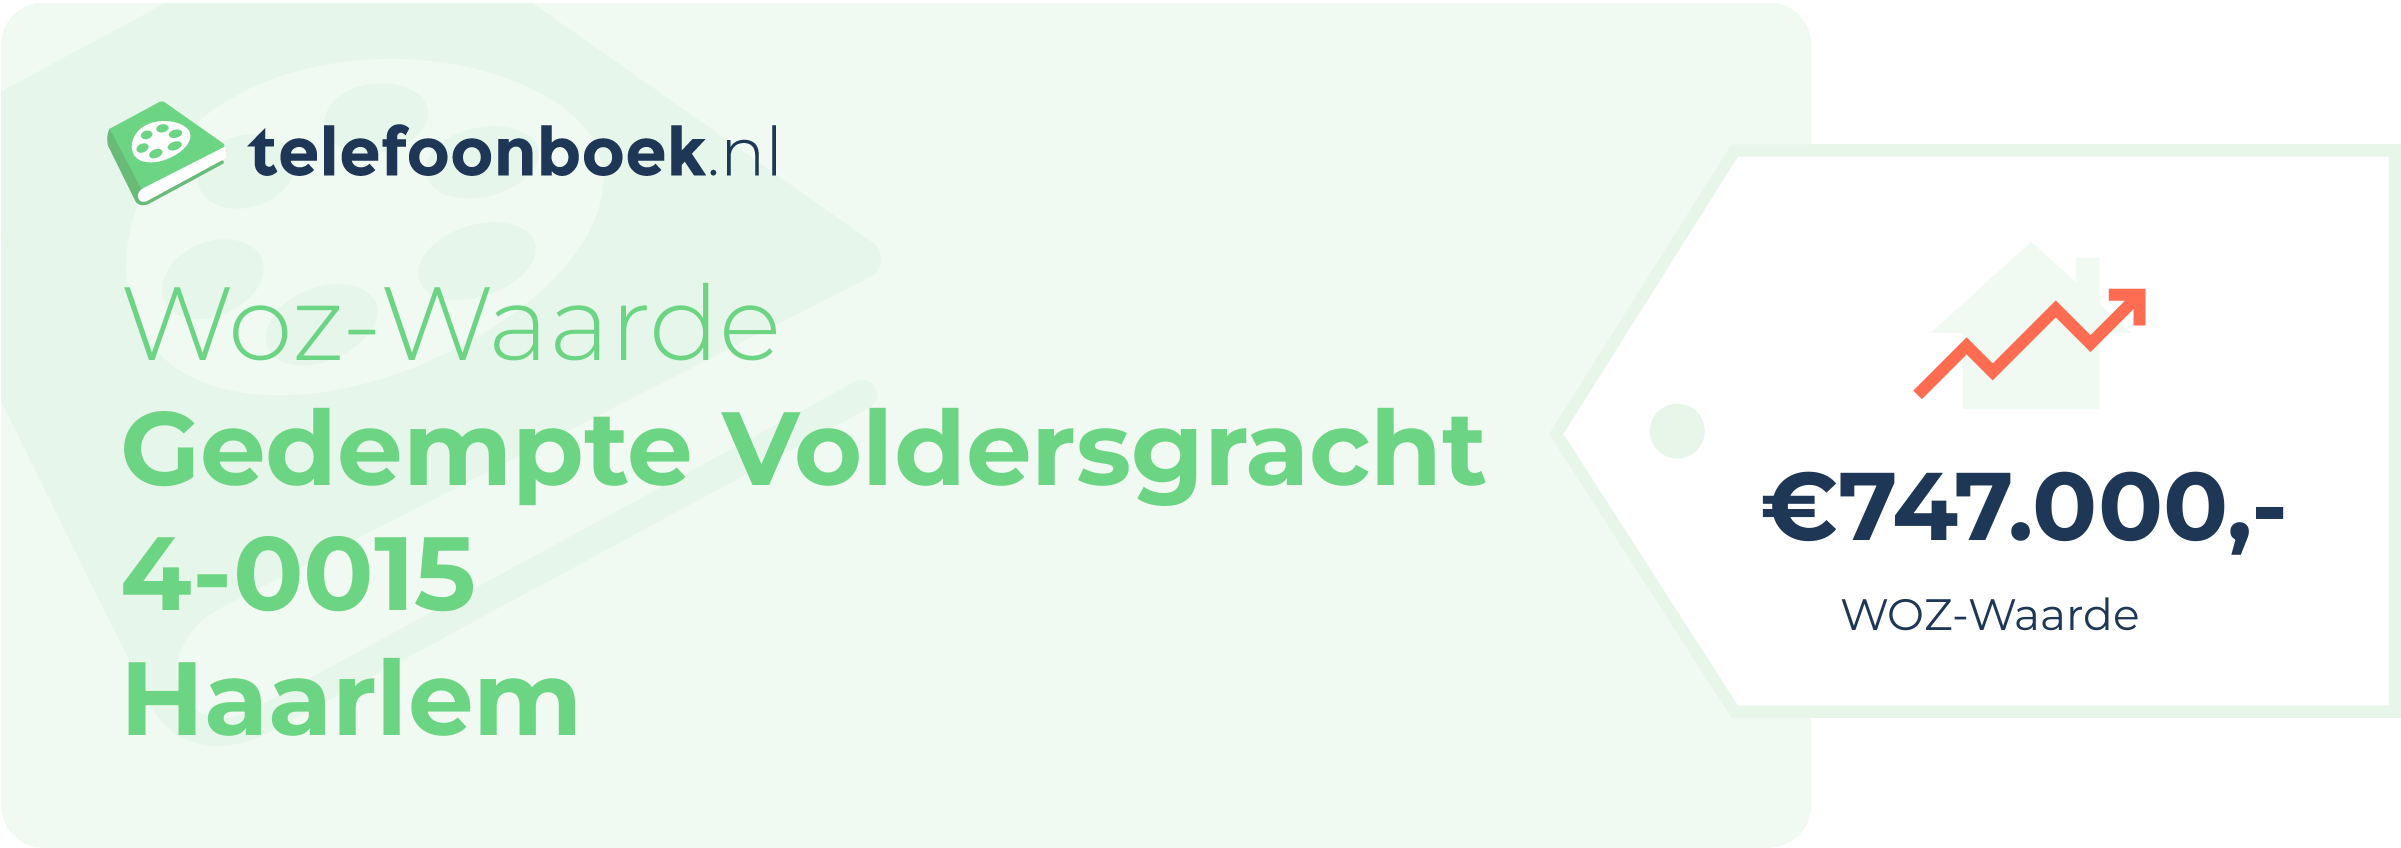 WOZ-waarde Gedempte Voldersgracht 4-0015 Haarlem